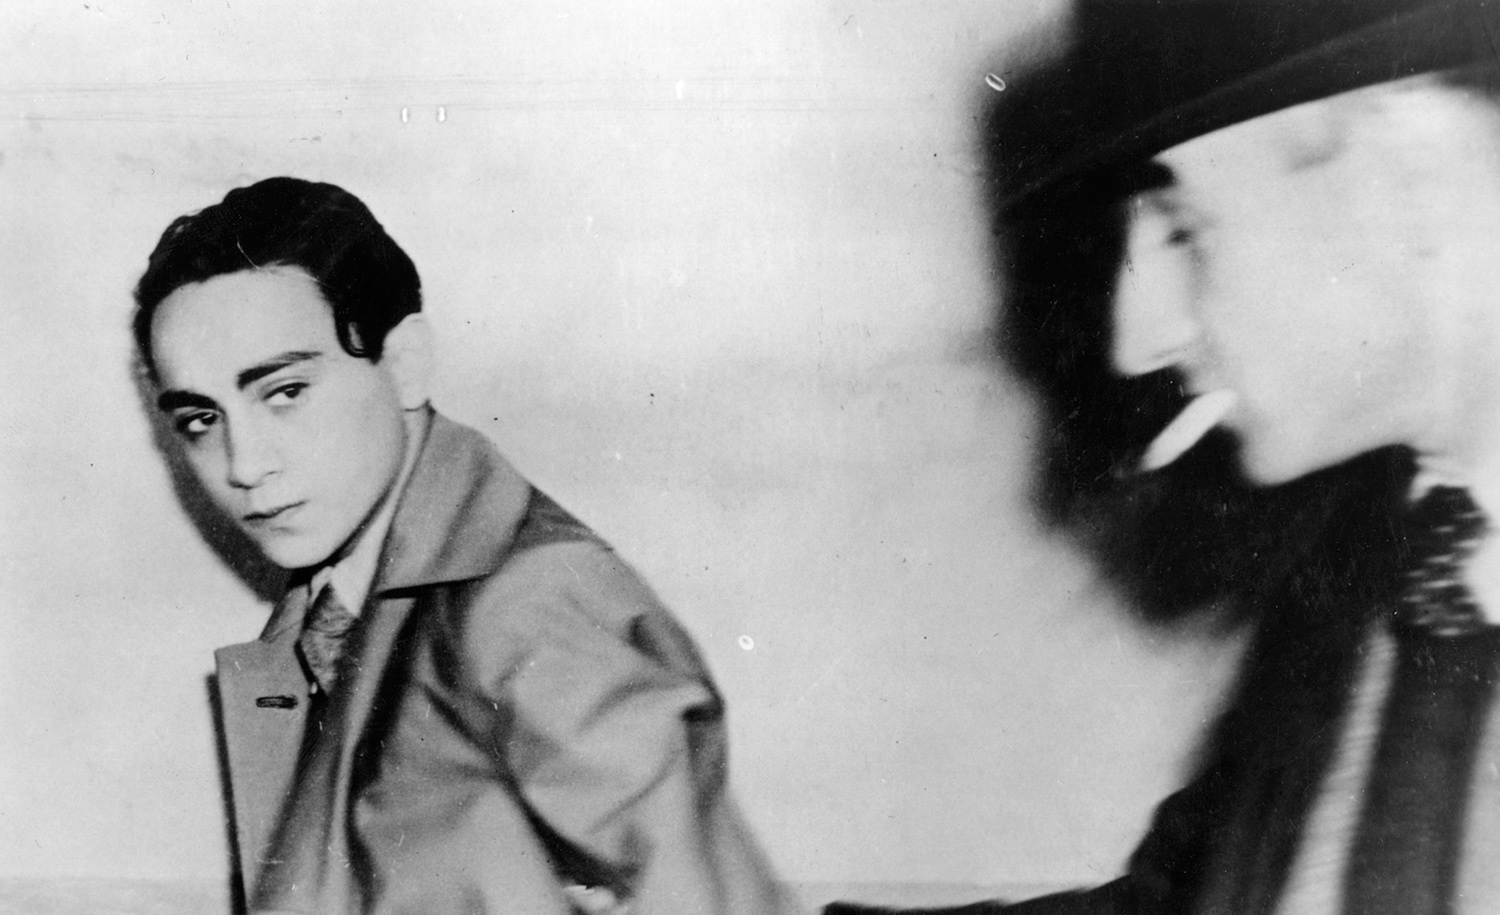 Herschel Grynszpan under arrest for the assassination of the German diplomat Ernst vom Rath, Paris, November 7, 1938. Sueddeutsche Zeitung Photo/Getty.
